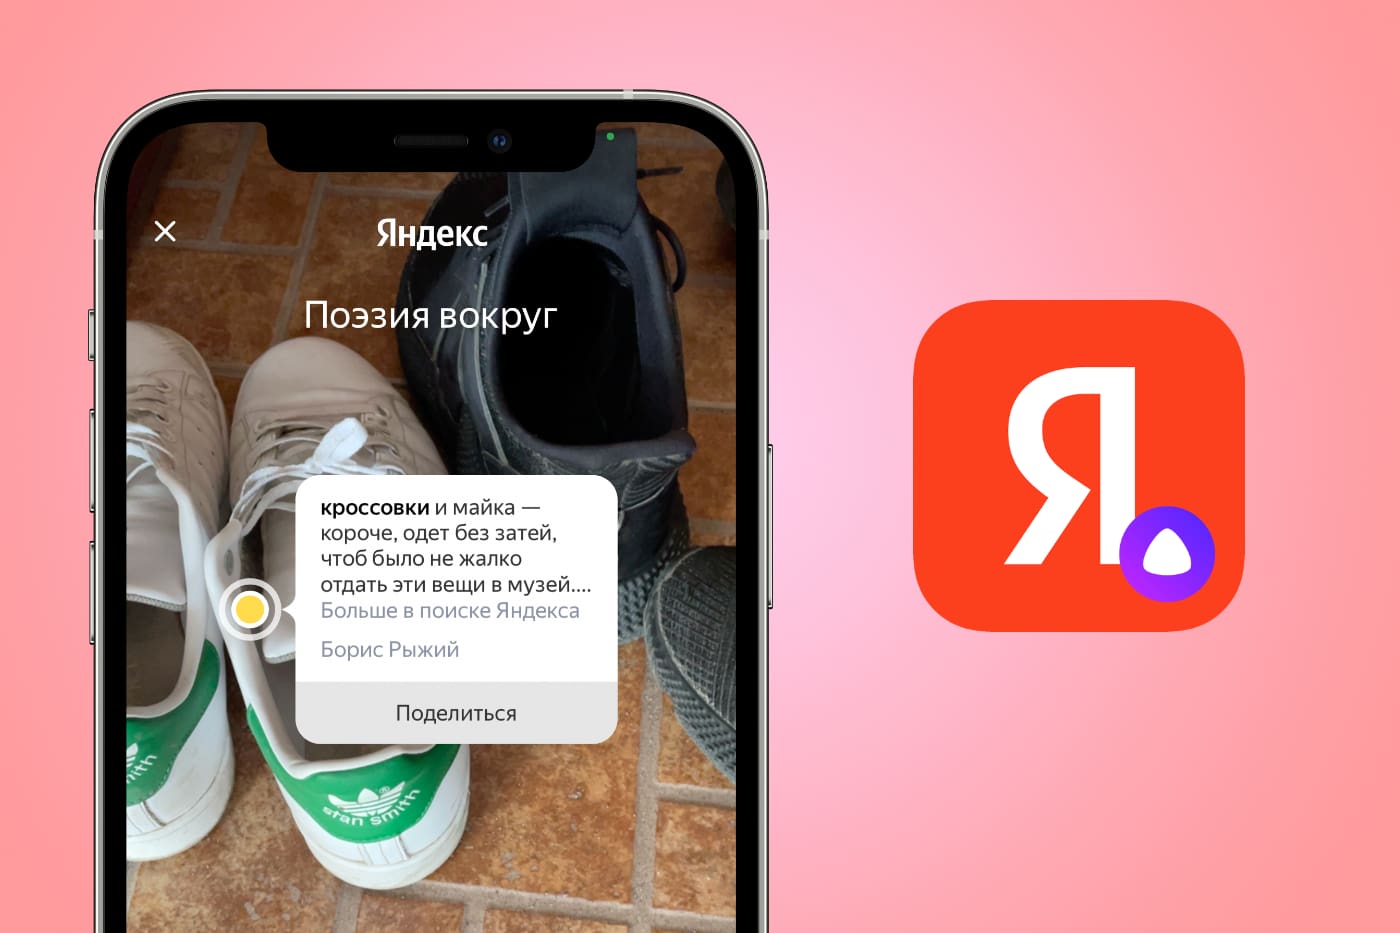 Приложение Яндекса научилось читать стихи про любой объект в кадре камеры